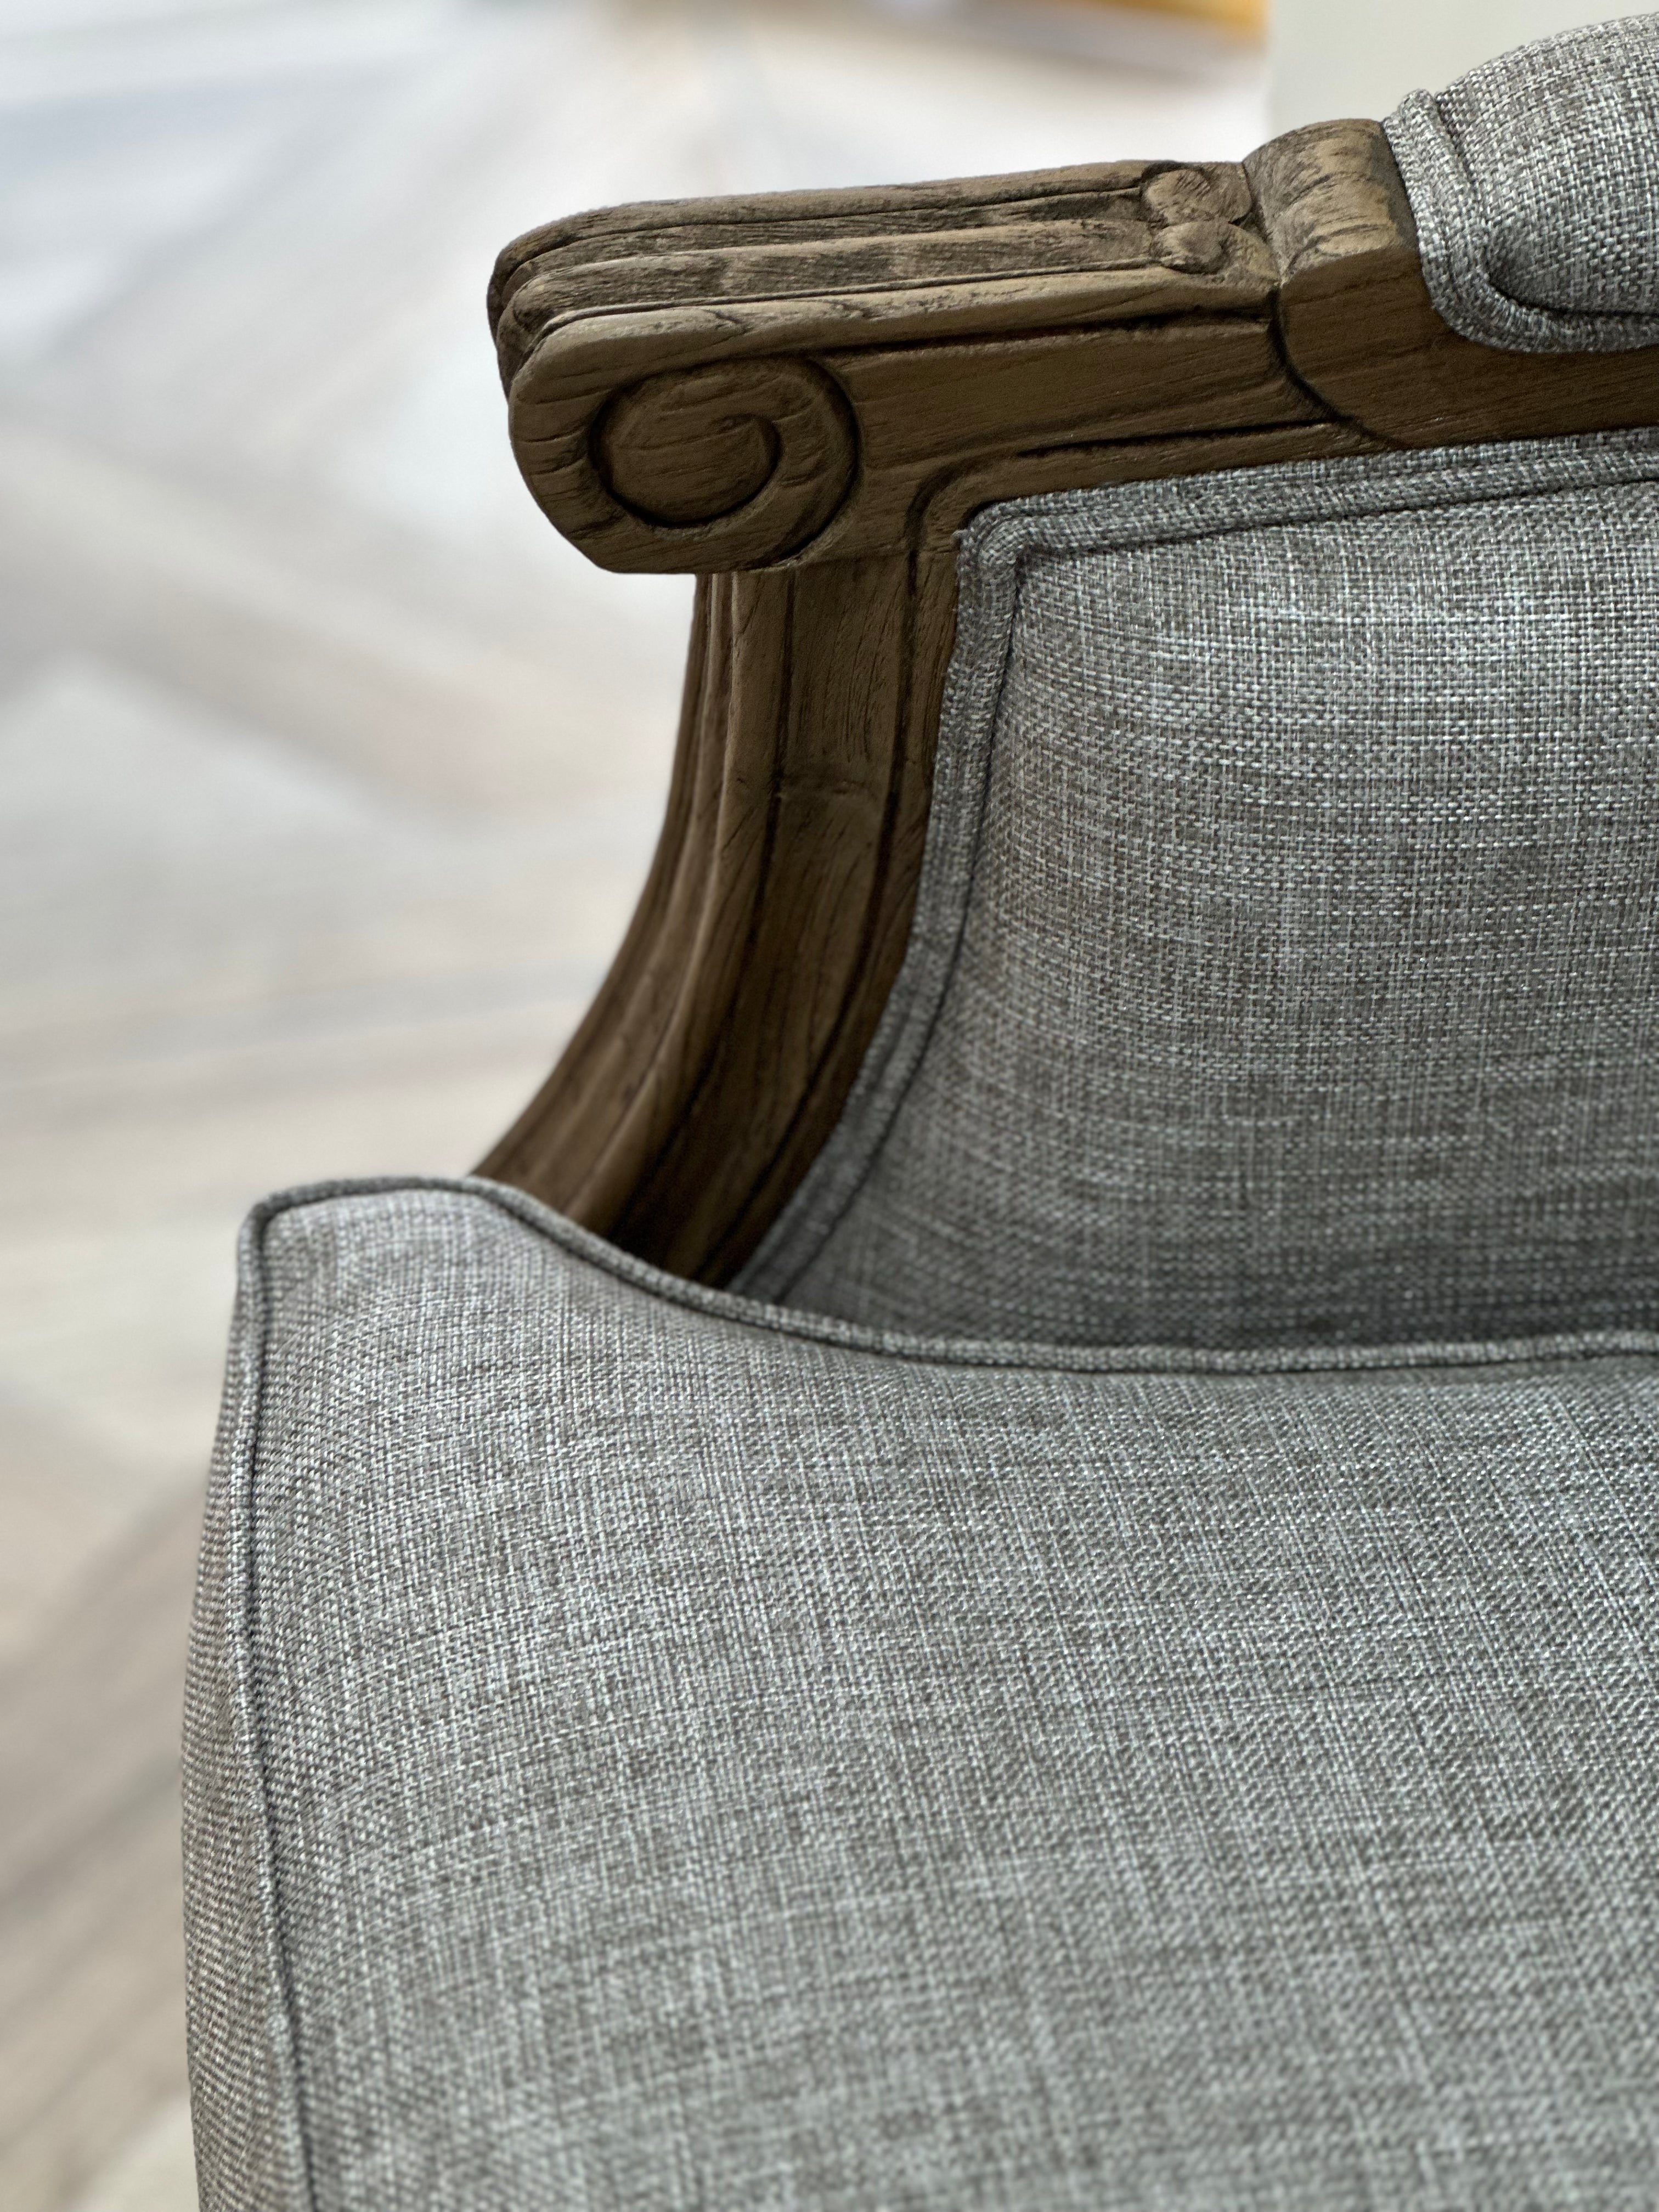 Pacific Oak Lyon Grey Armchair